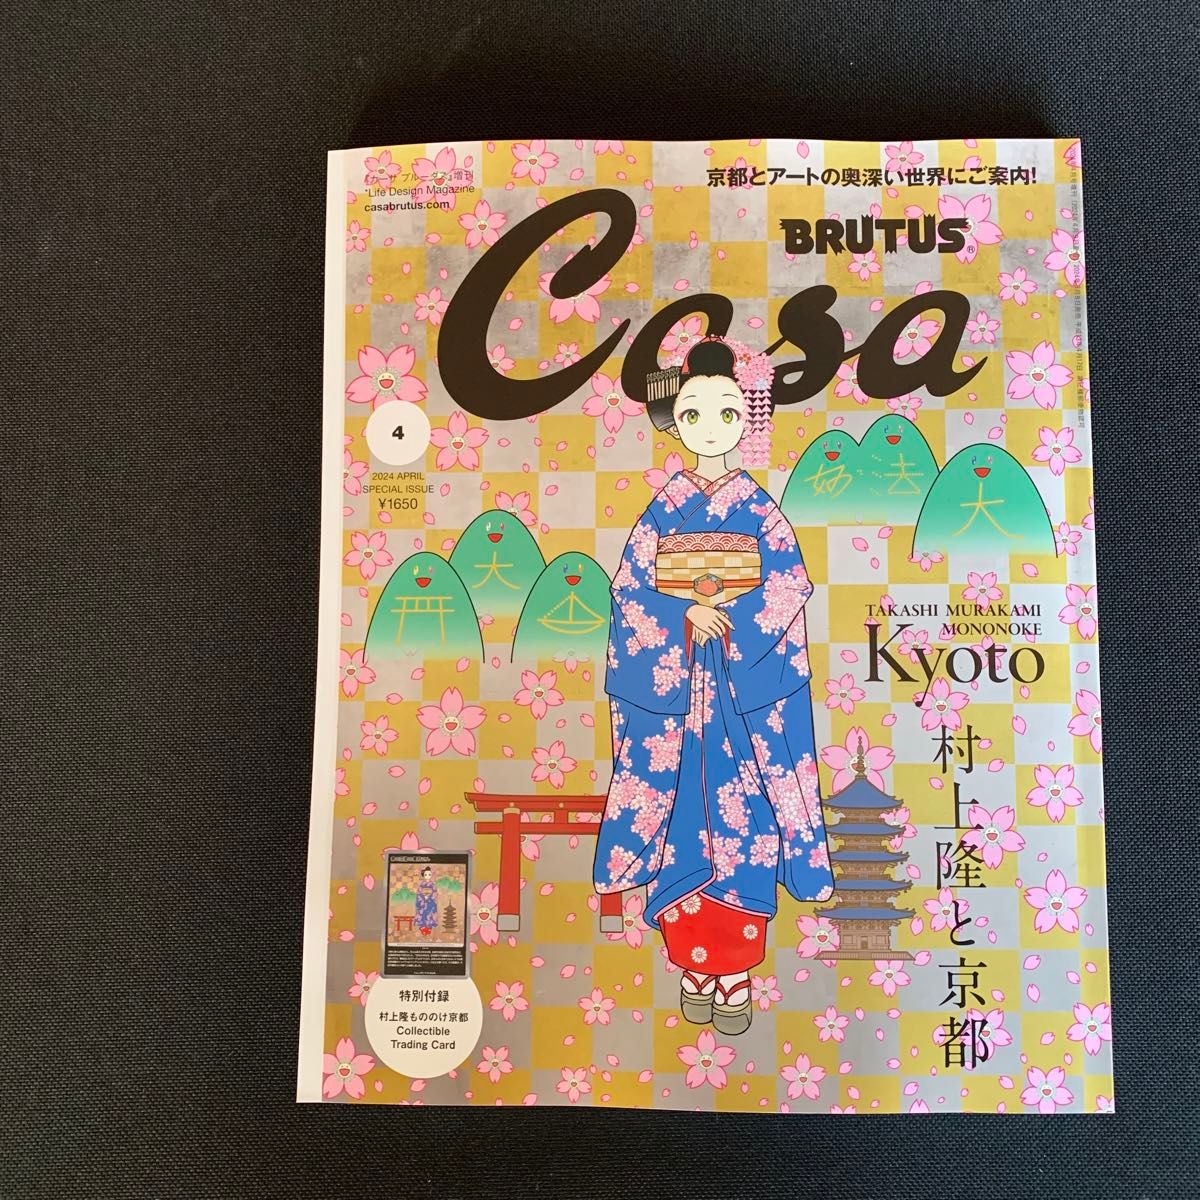 Casa BRUTUS 4月号増刊 春の京都の舞妓さん 村上隆 もののけ京都